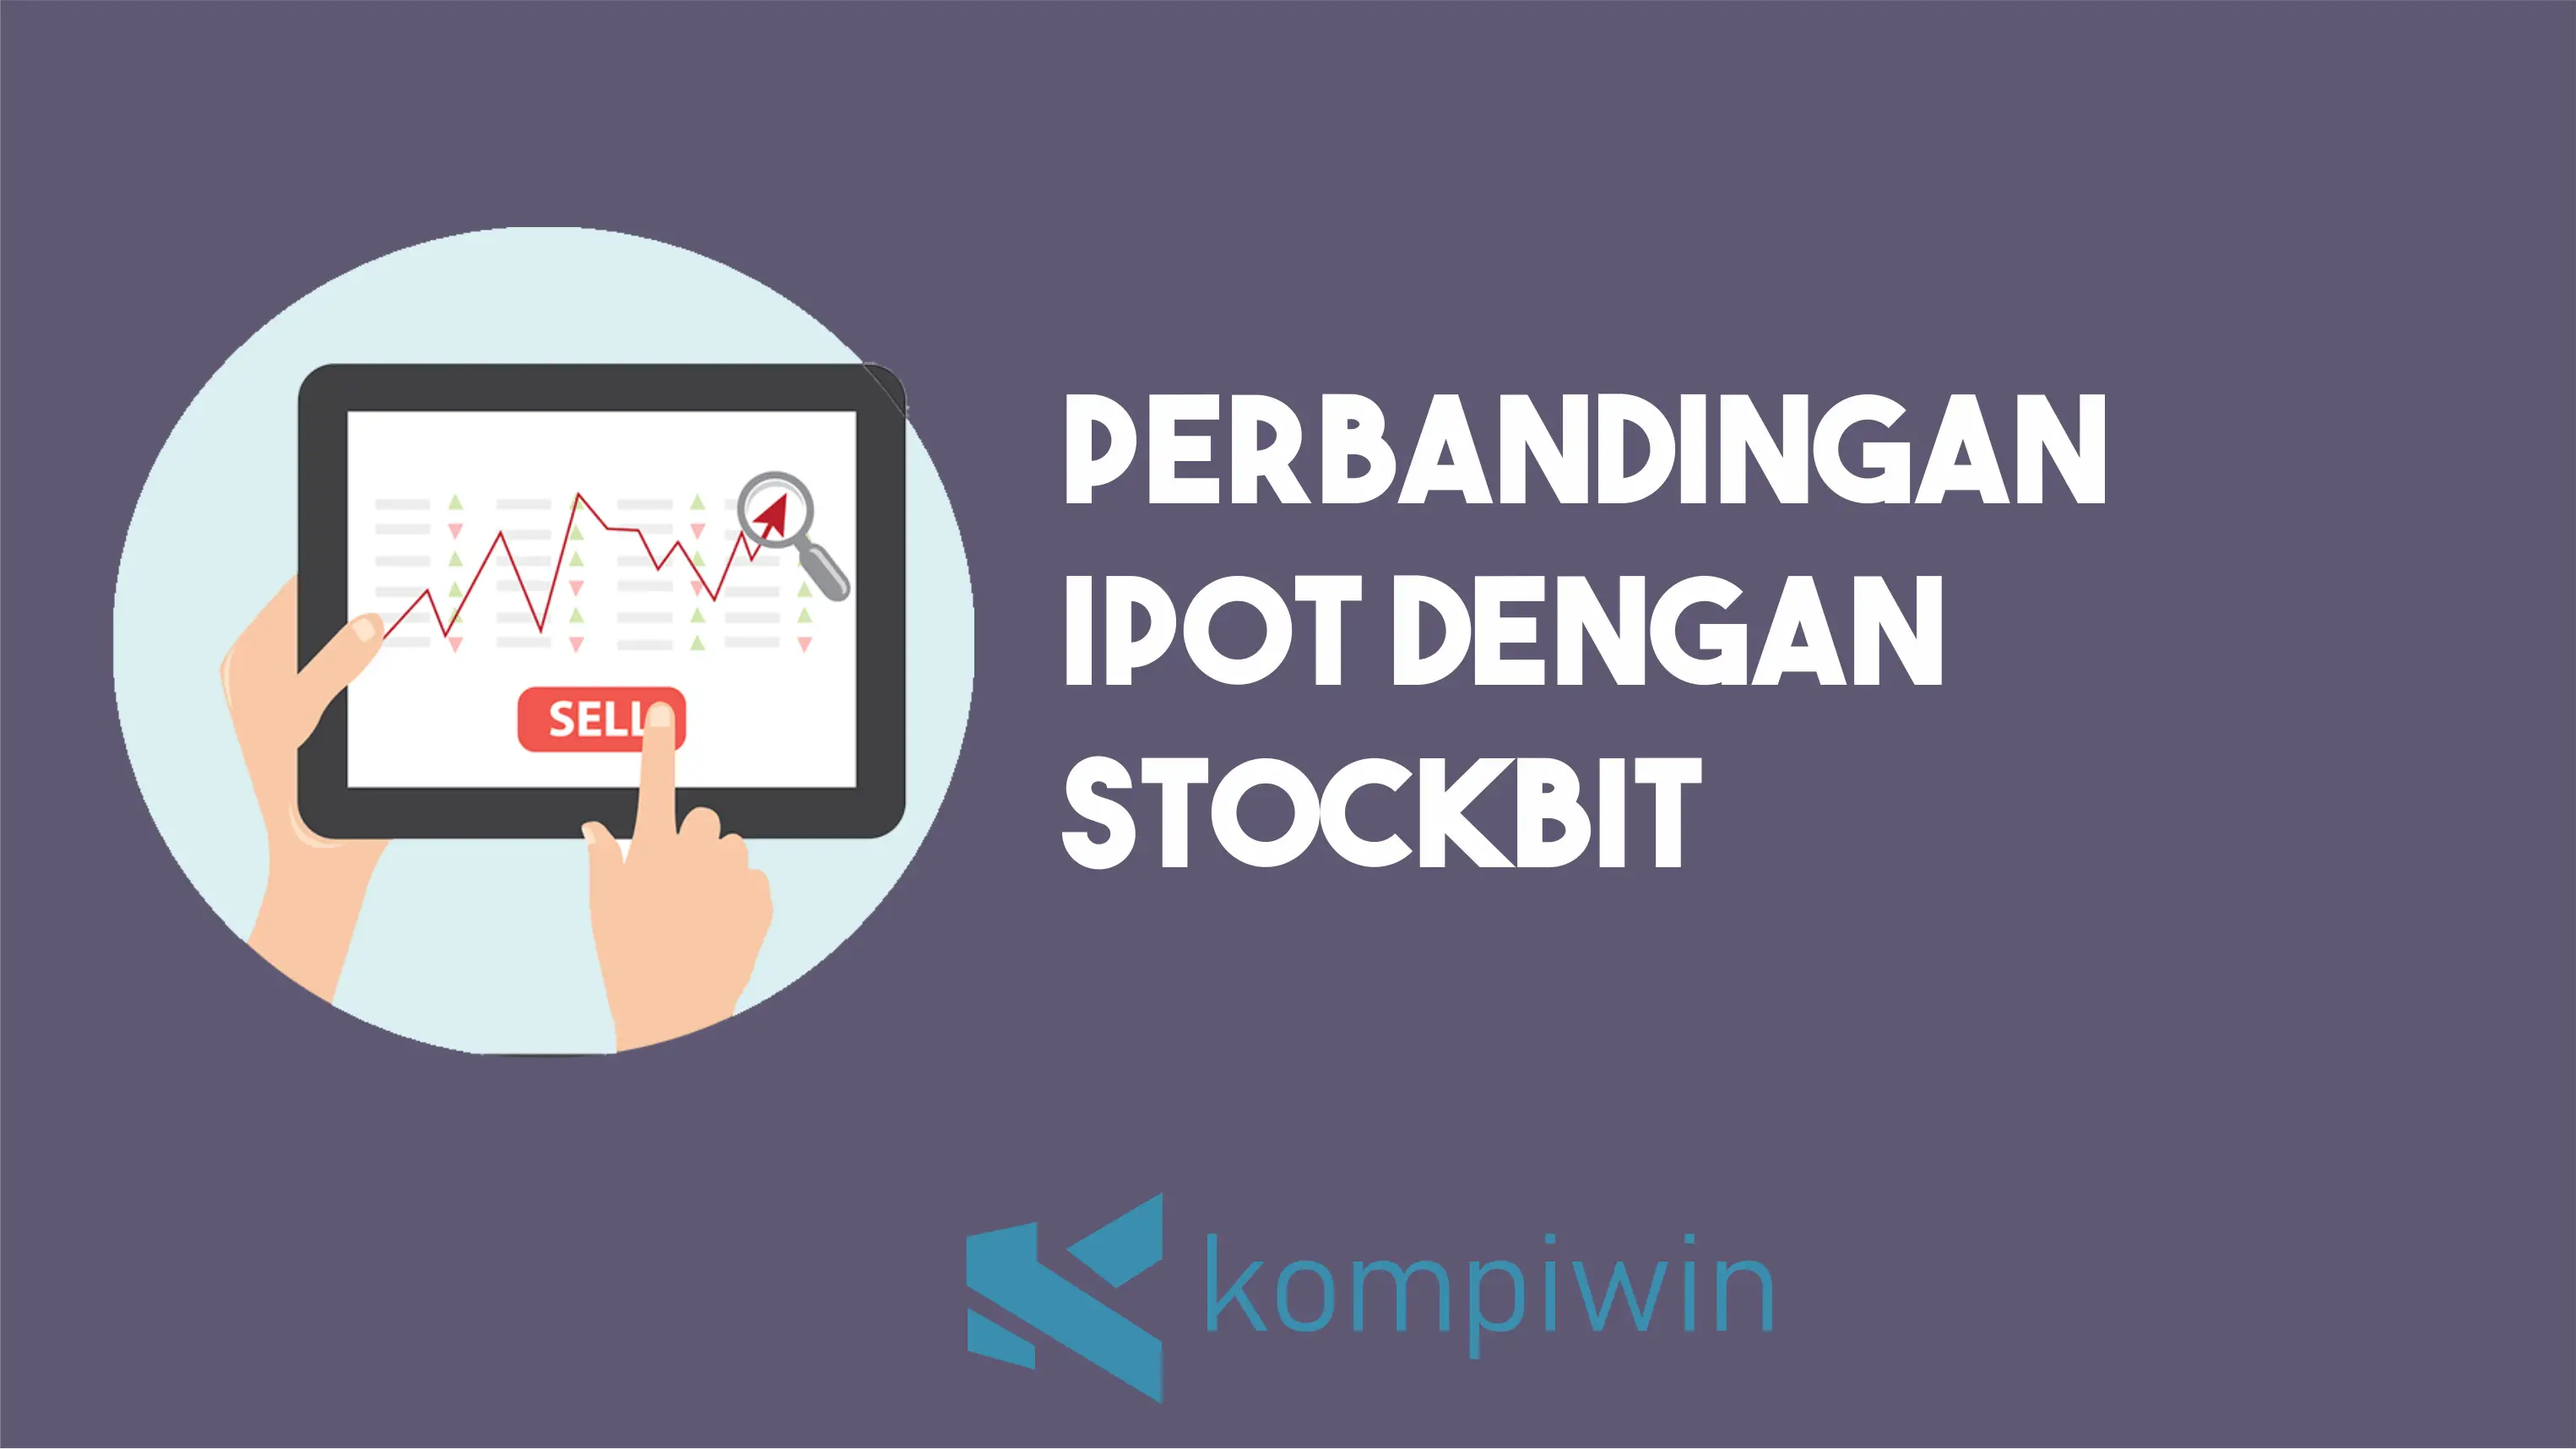 Perbandingan IPOT dengan Stockbit